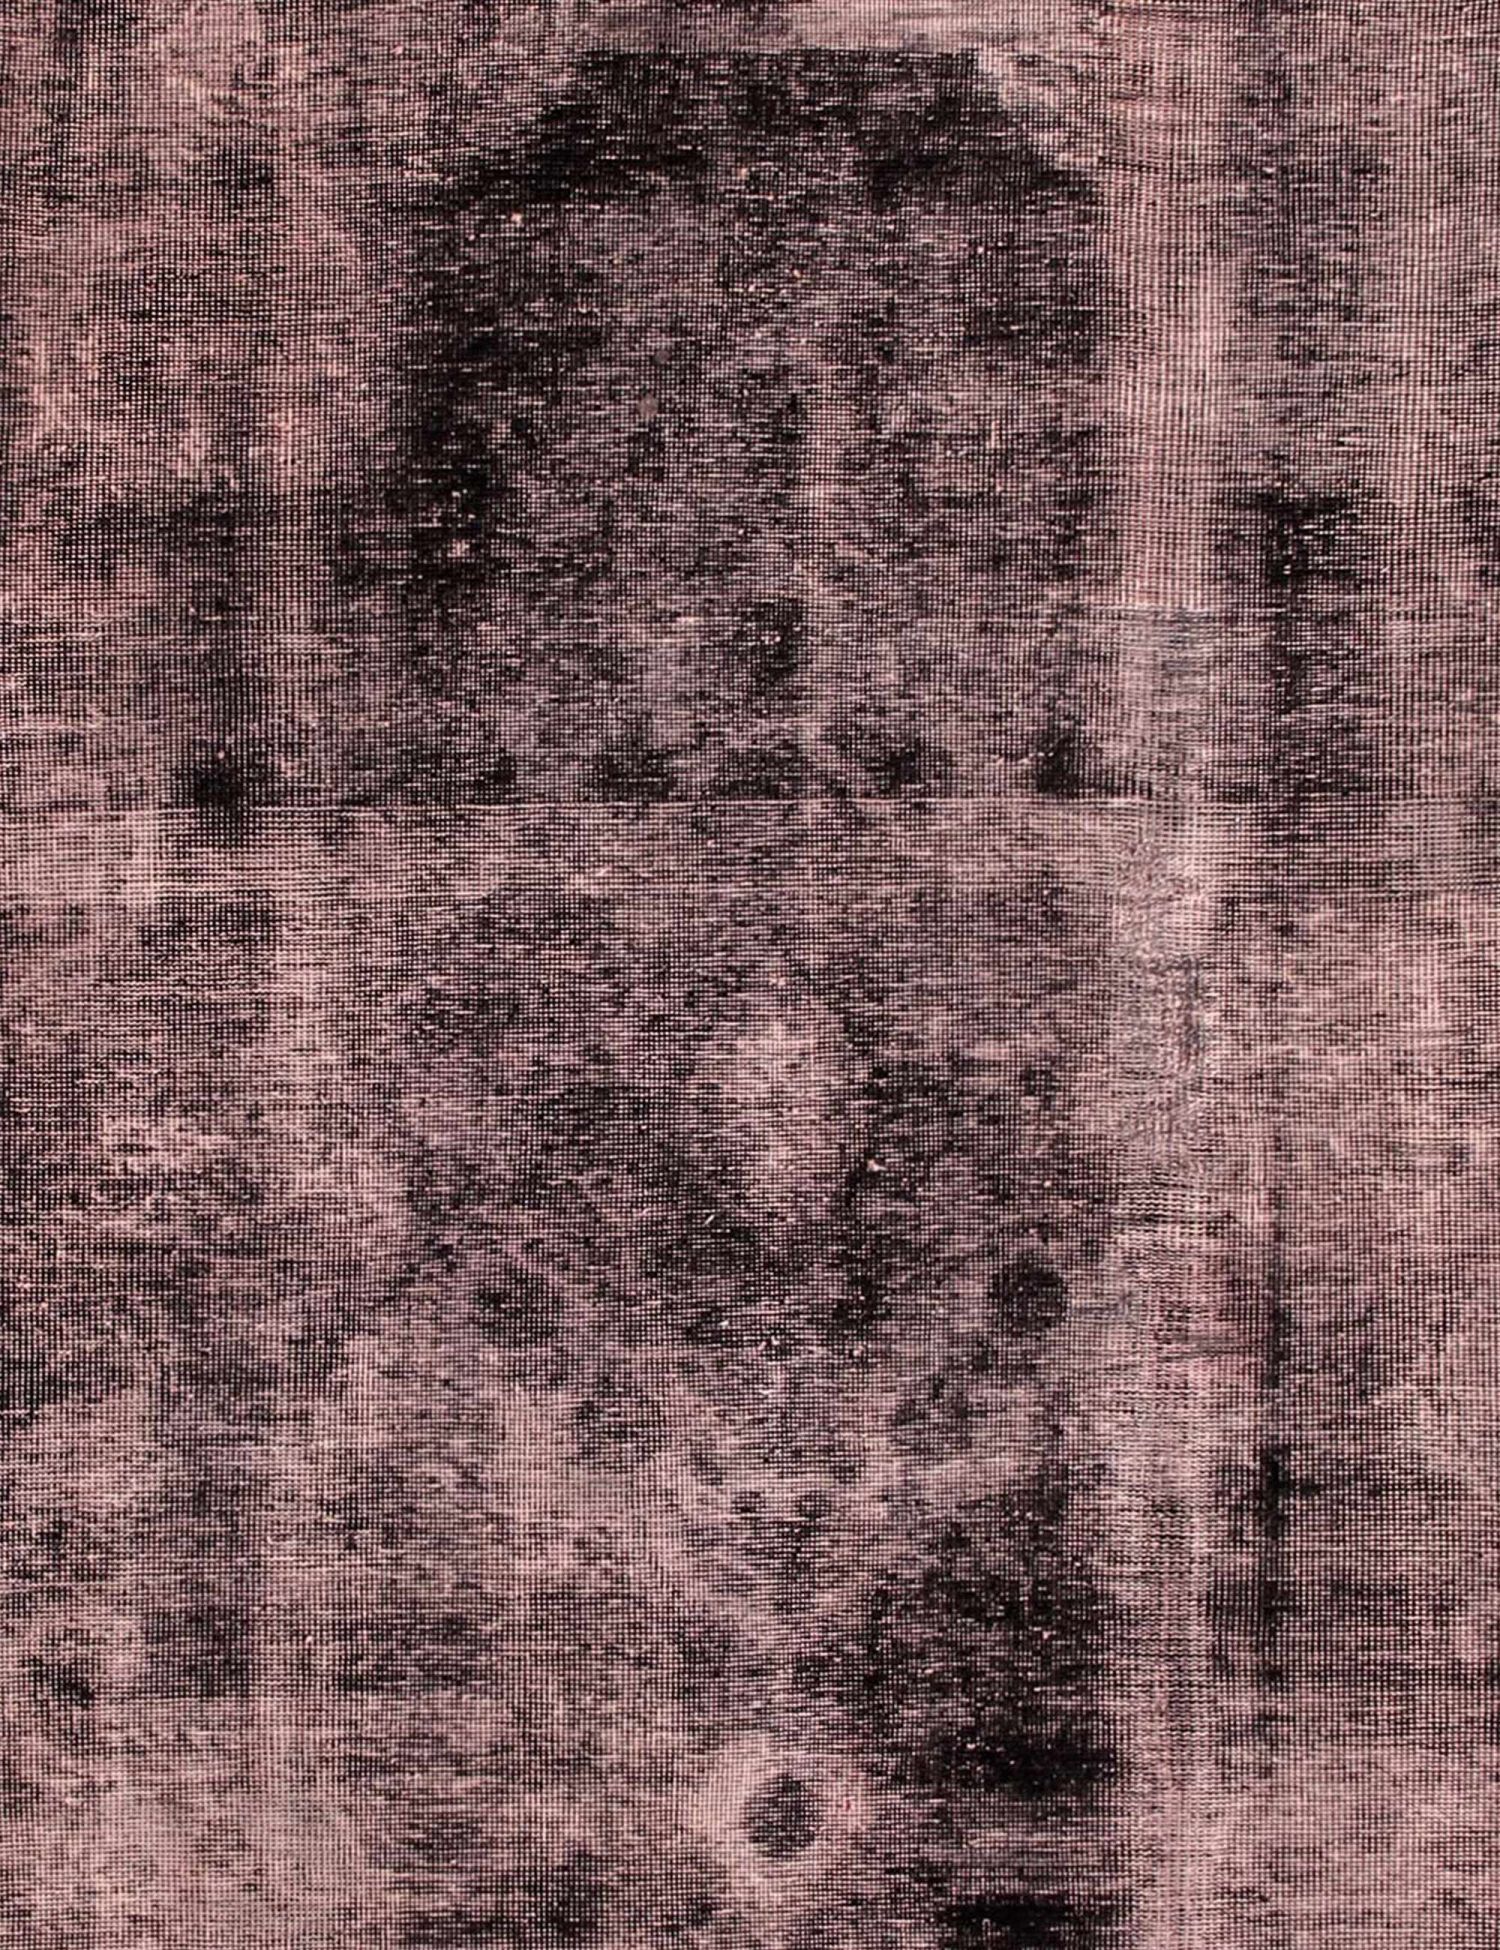 Persischer Vintage Teppich  schwarz <br/>183 x 183 cm